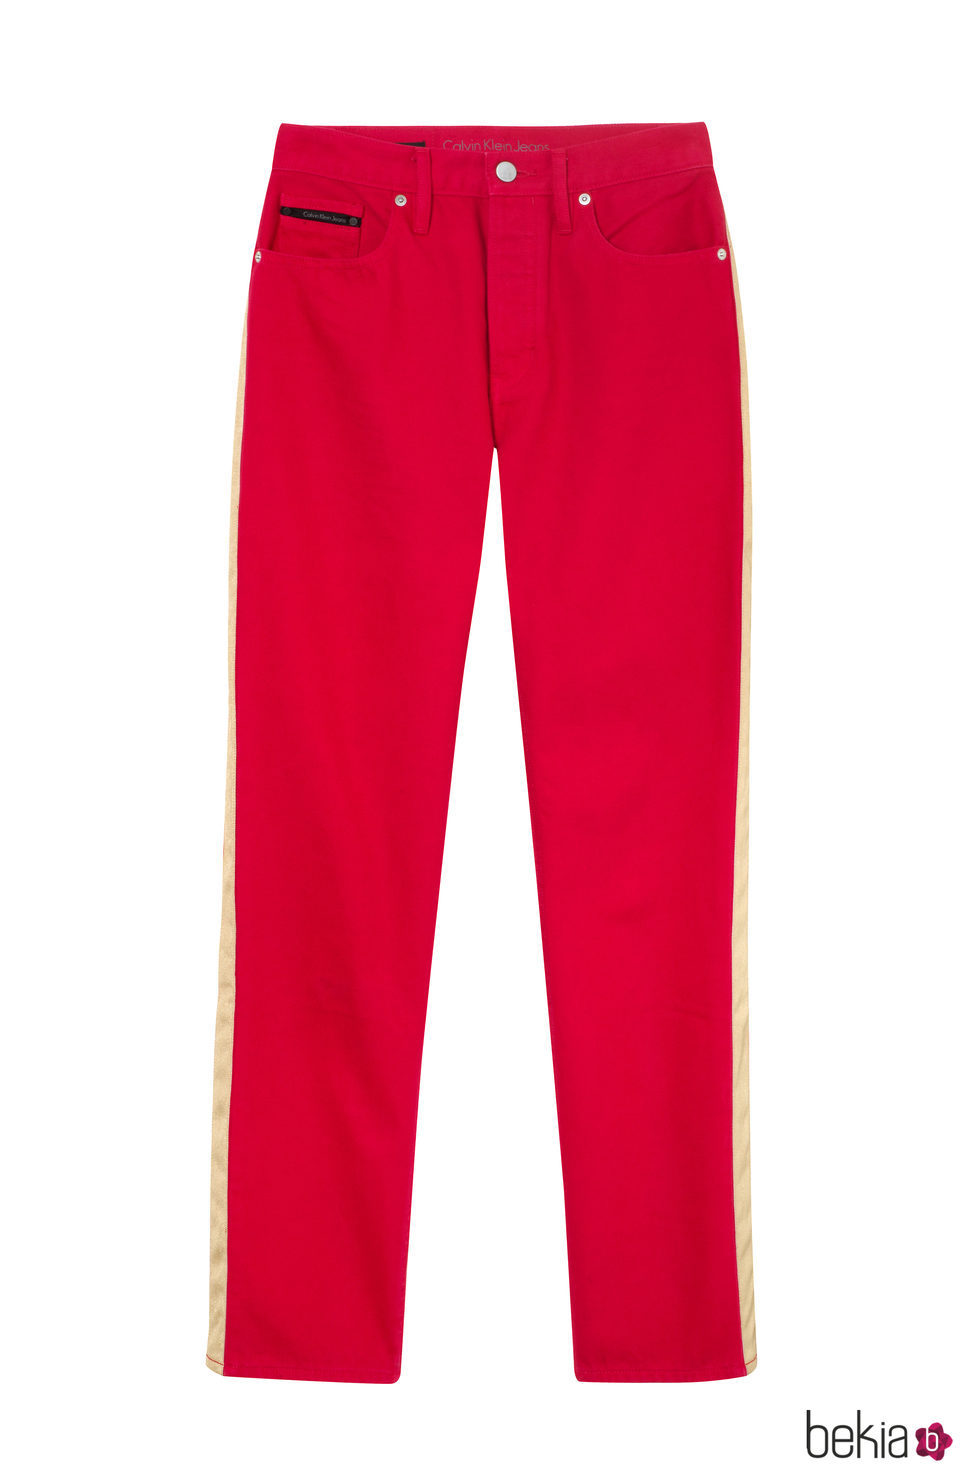 Pantalón rojo femenino de Calvin Klein de la colección primavera jeans 2018